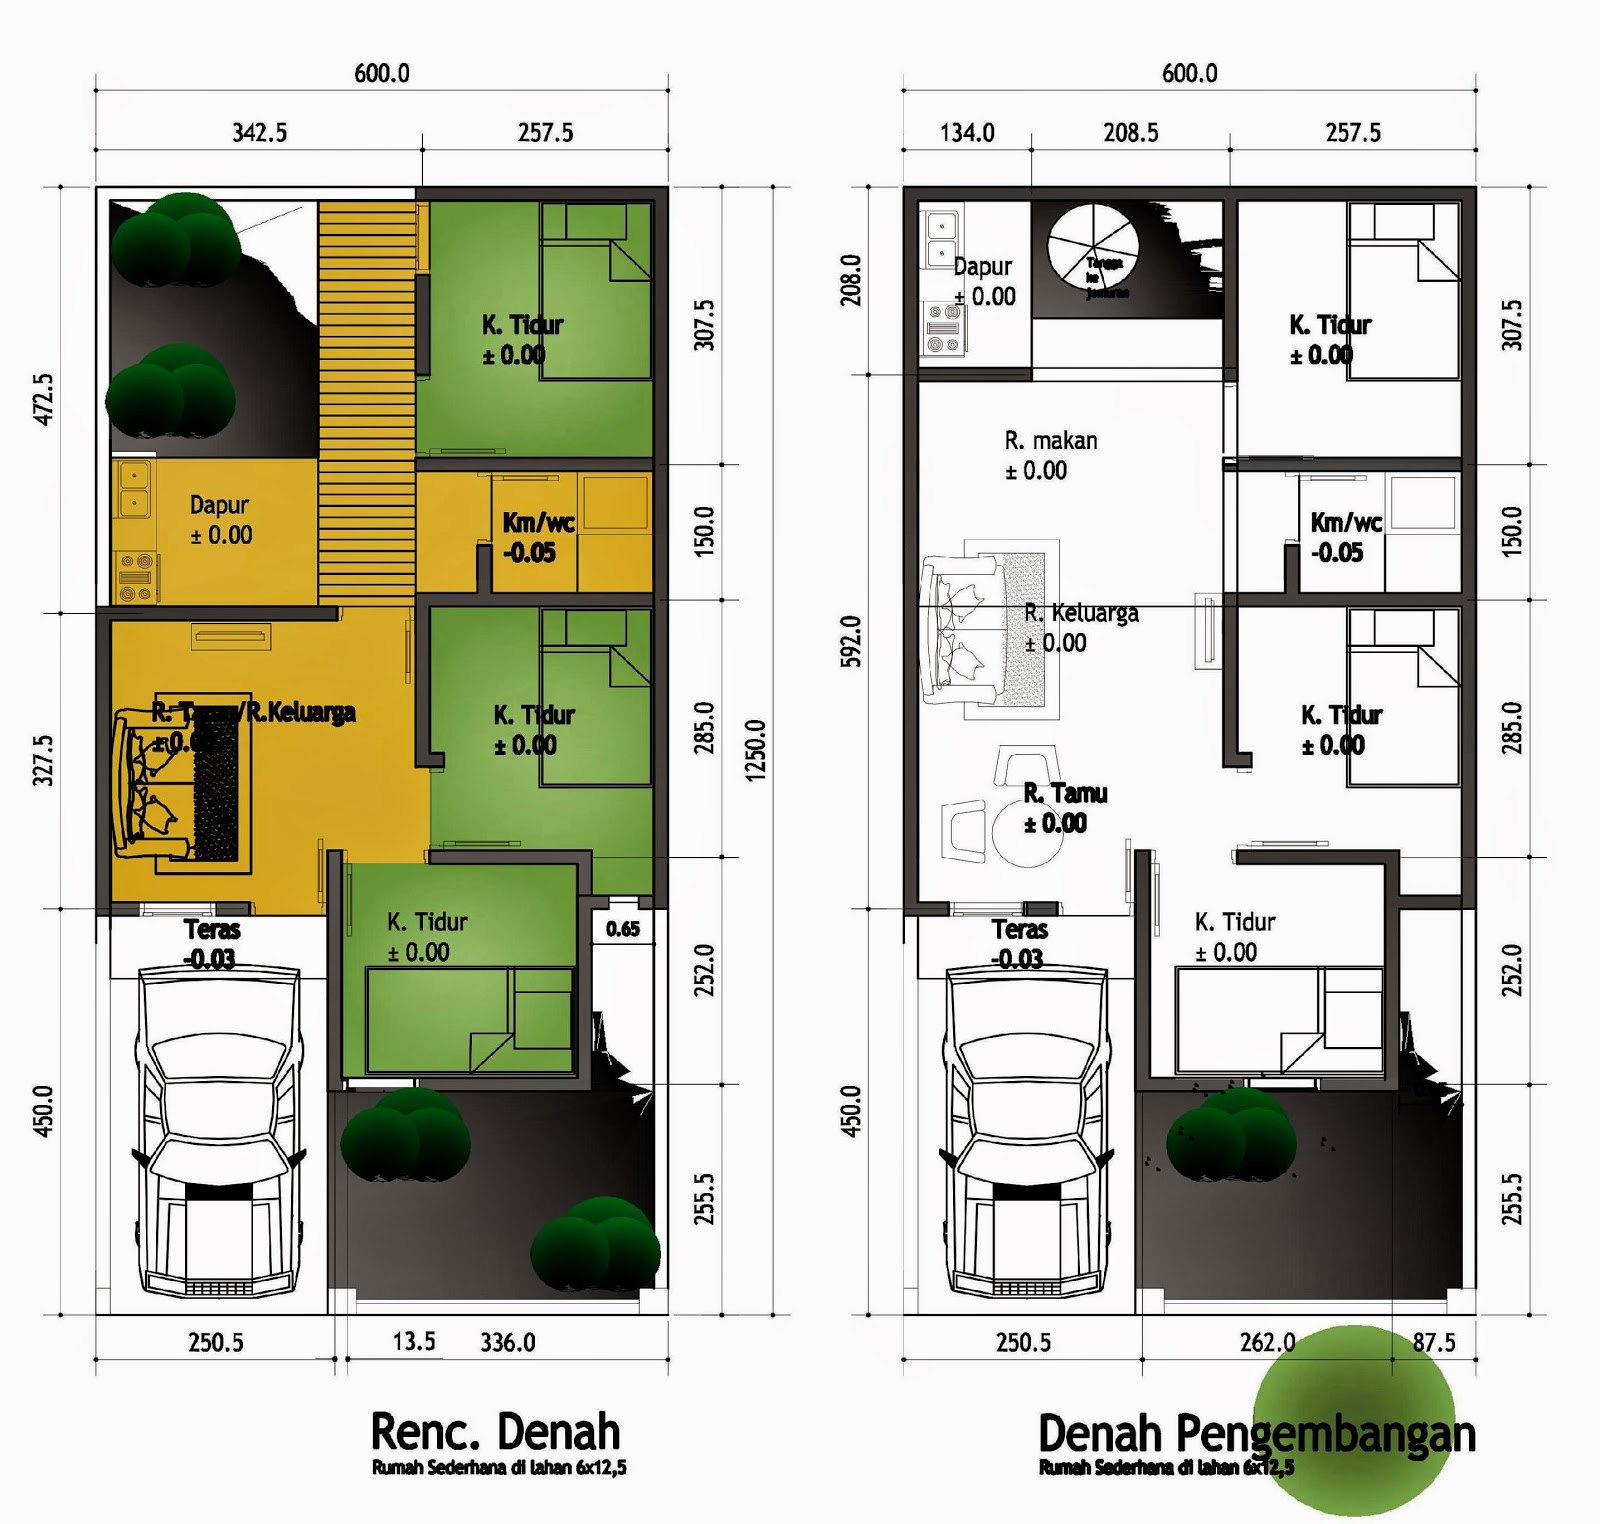 25 Baru Denah Rumah Tiga Kamar Design Info On The Web